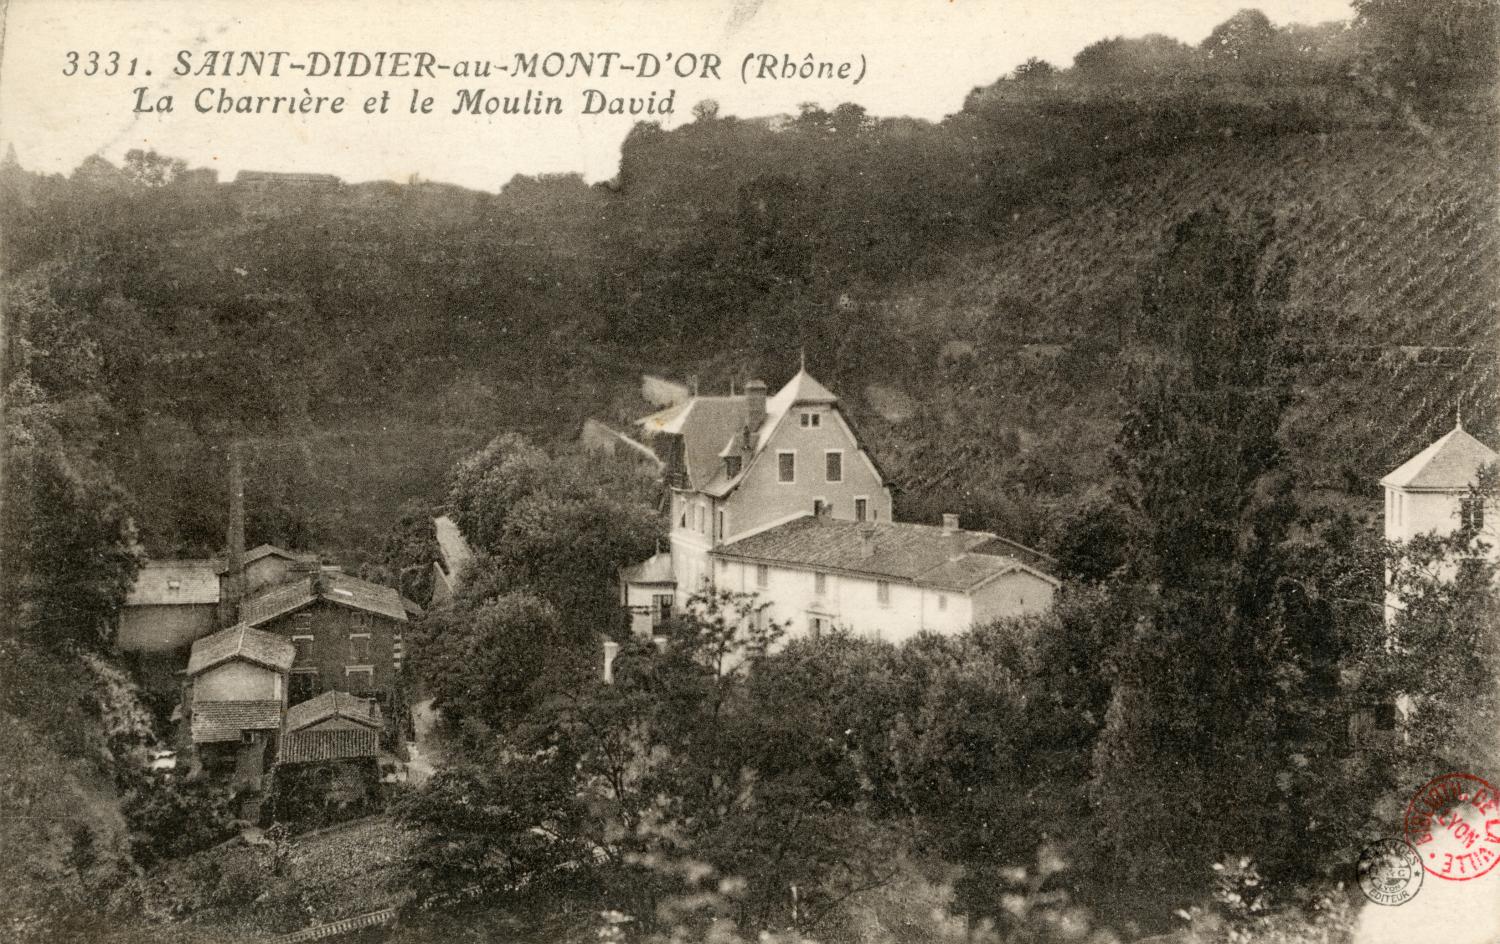 Saint-Didier-au-Mont-d'Or (Rhône). - La Charrière et le Moulin David